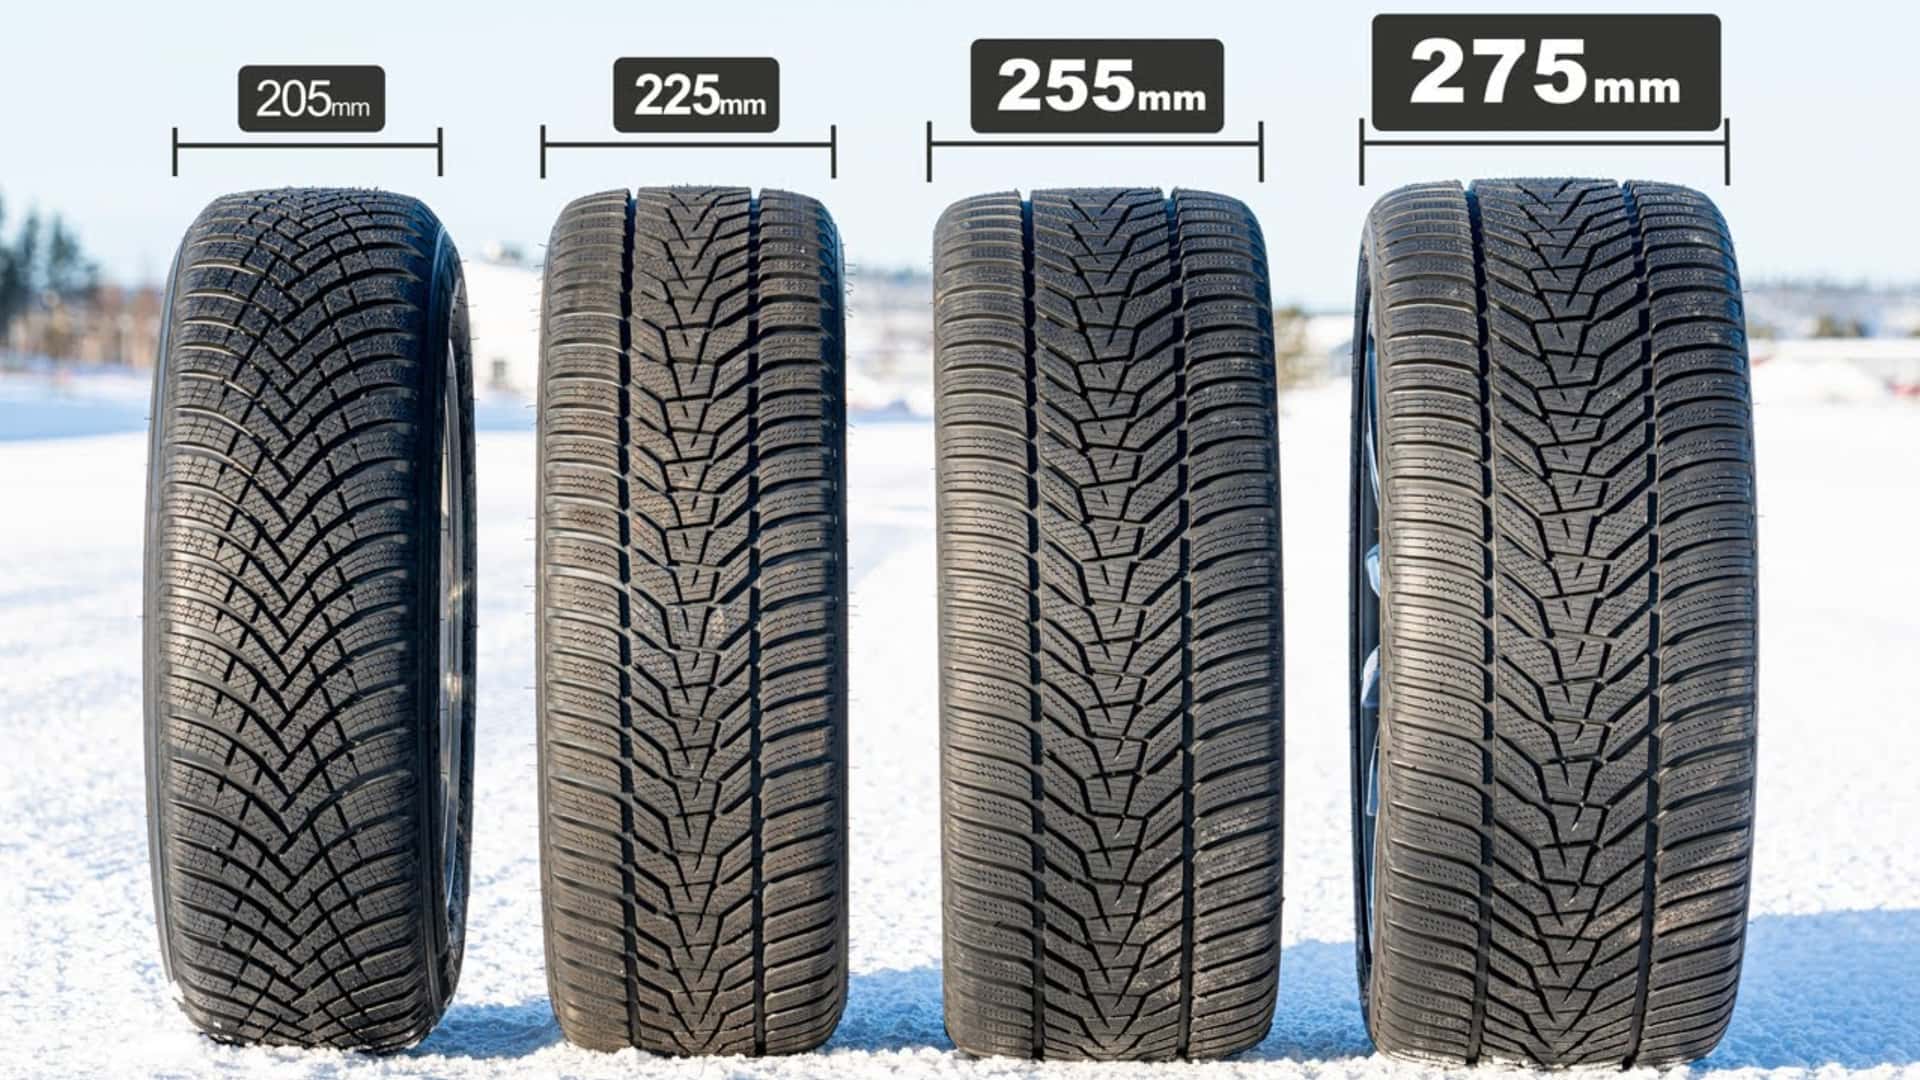 चौड़े बनाम संकीर्ण शीतकालीन टायर: यह वास्तव में मायने नहीं रखता कि आप किसे चुनते हैं